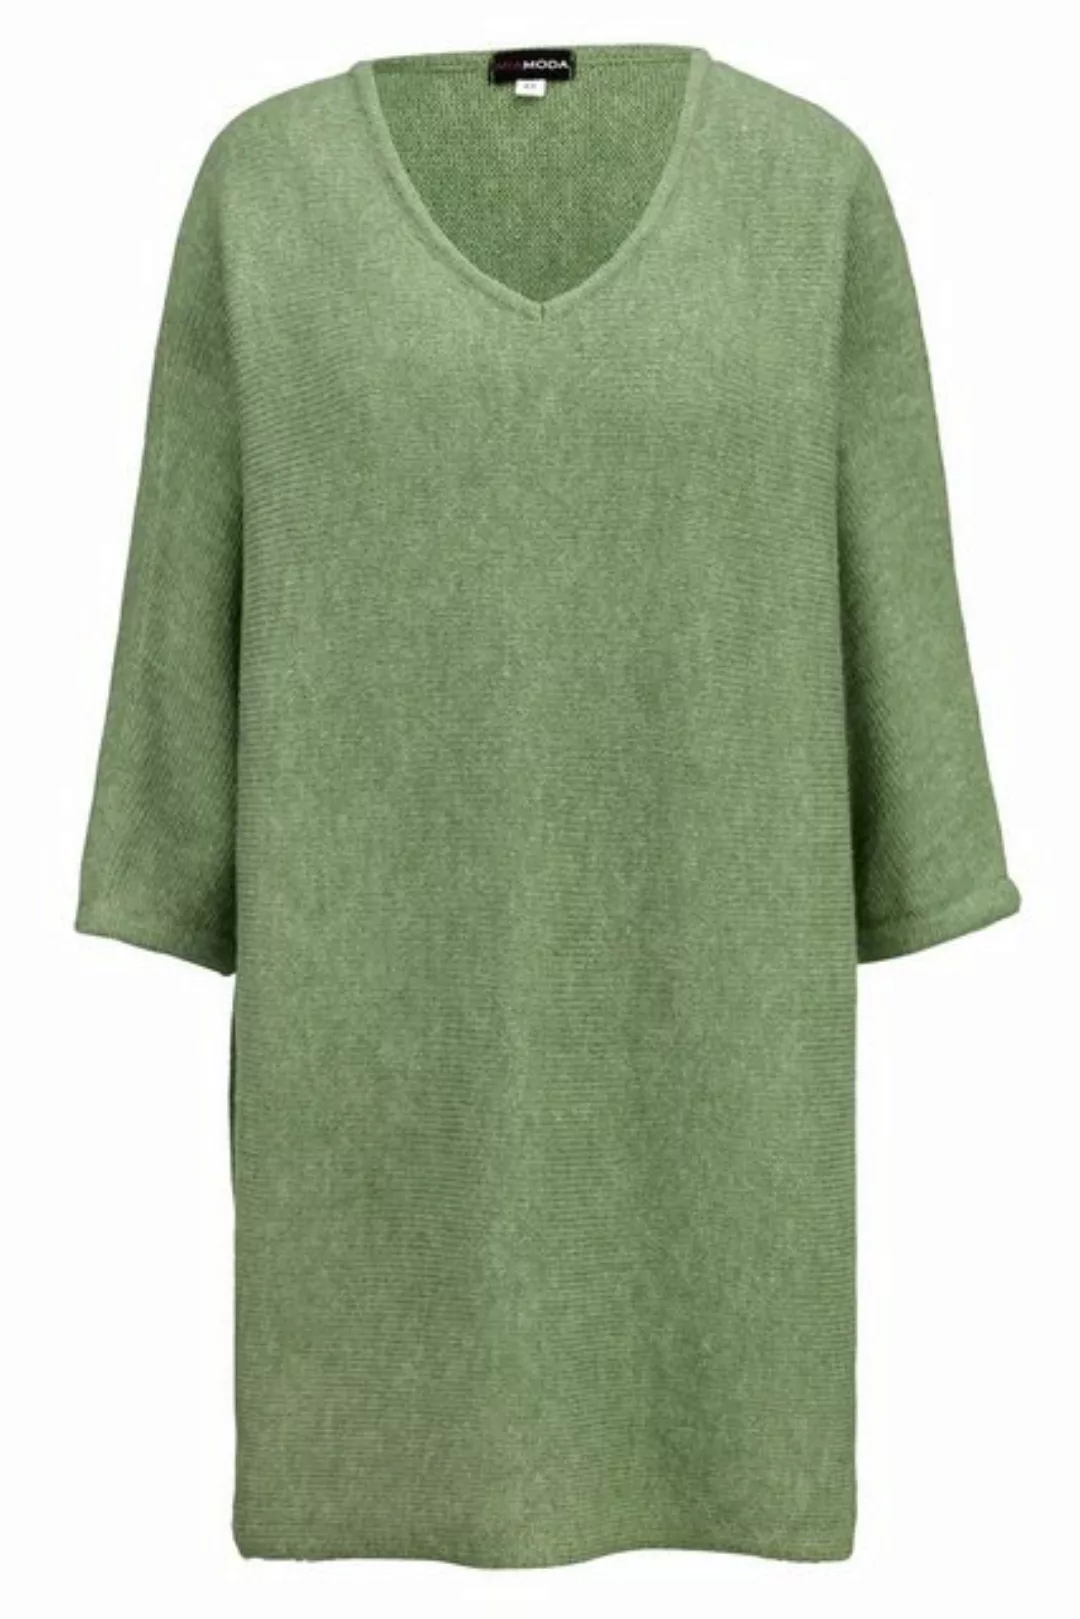 MIAMODA Strickpullover Pullover V-Ausschnitt 3/4-Ärmel günstig online kaufen